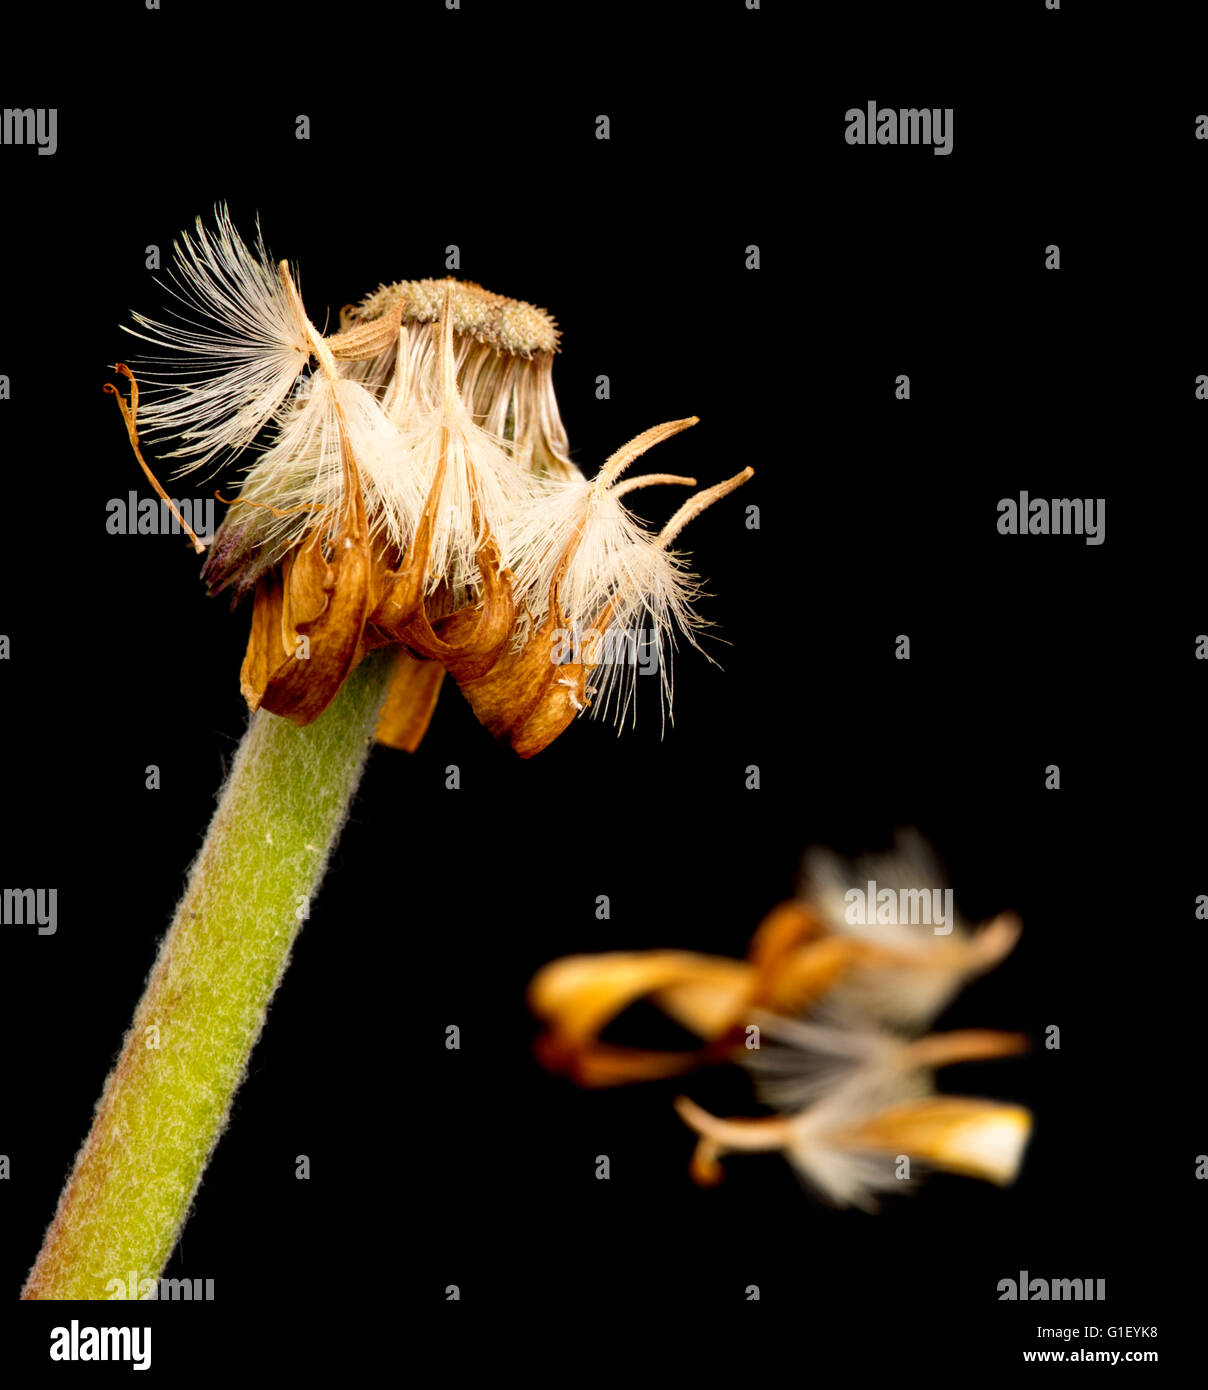 Belle fleur flétrie dahlia jaune isolé sur fond noir.Concept de nostalgie, de mélancolie et même la mort. Banque D'Images